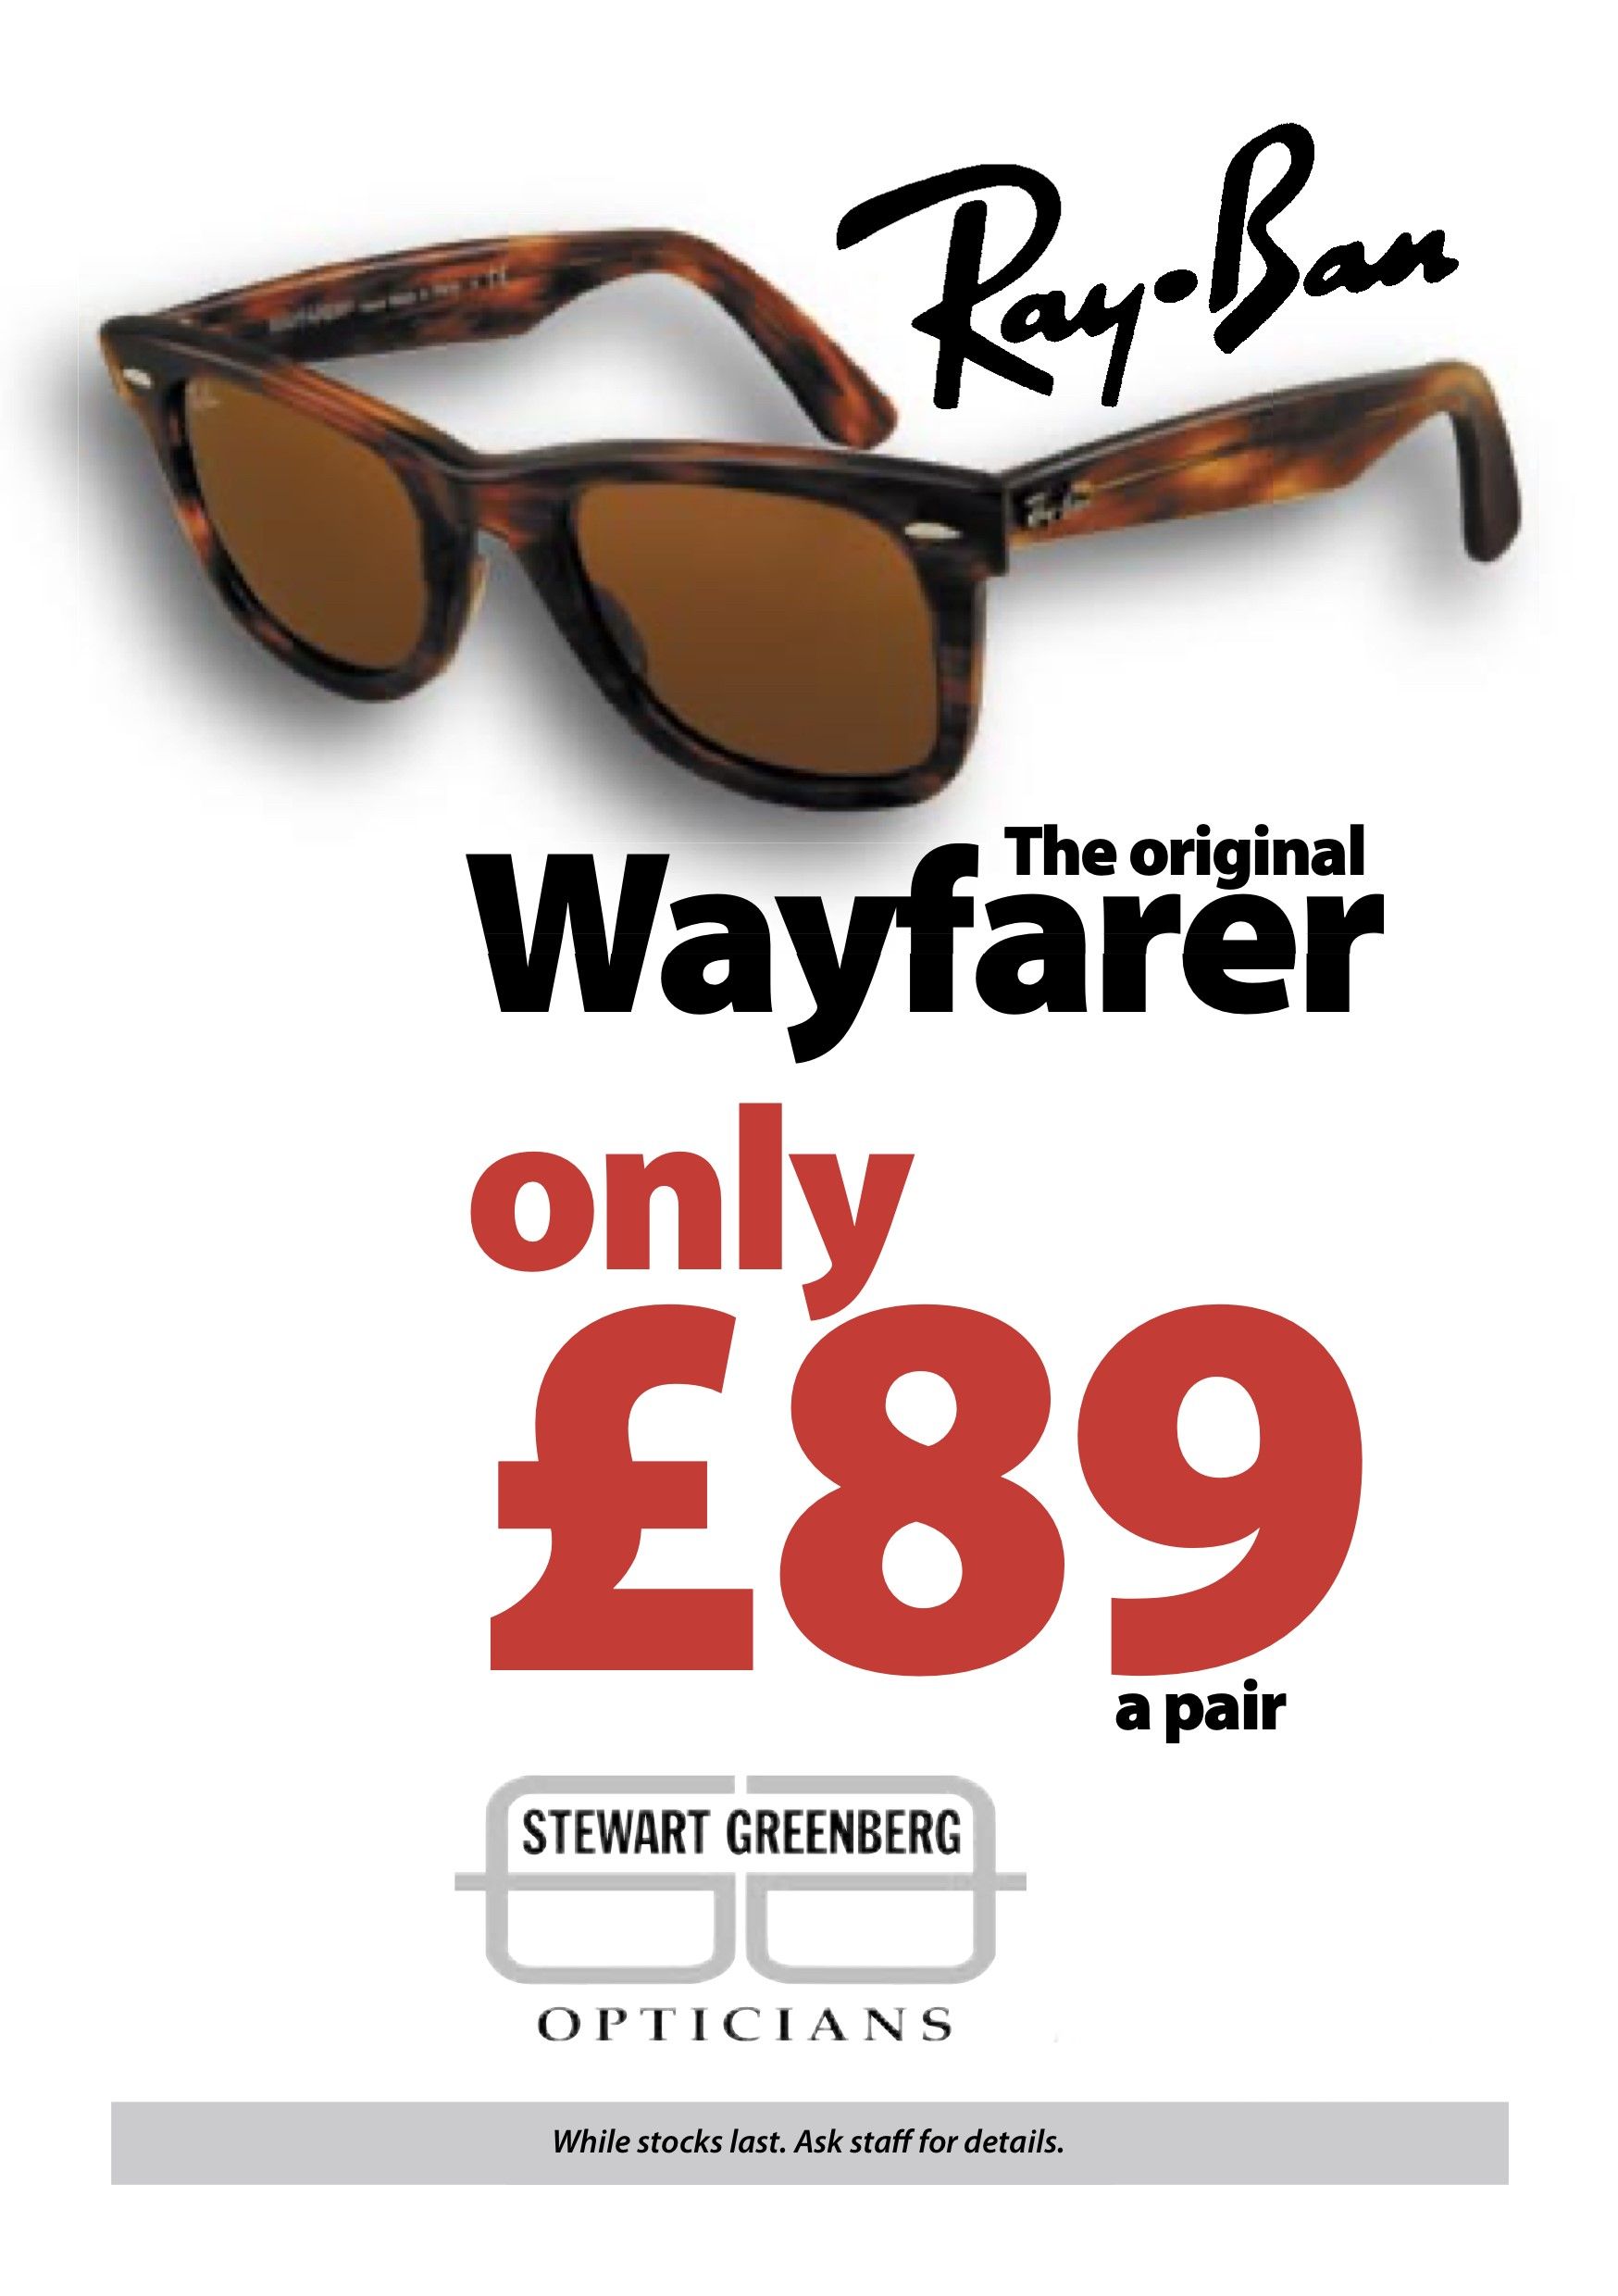 Ray-Ban Wayfarer Sunglasses Offer - Stewart Greenberg Opticians